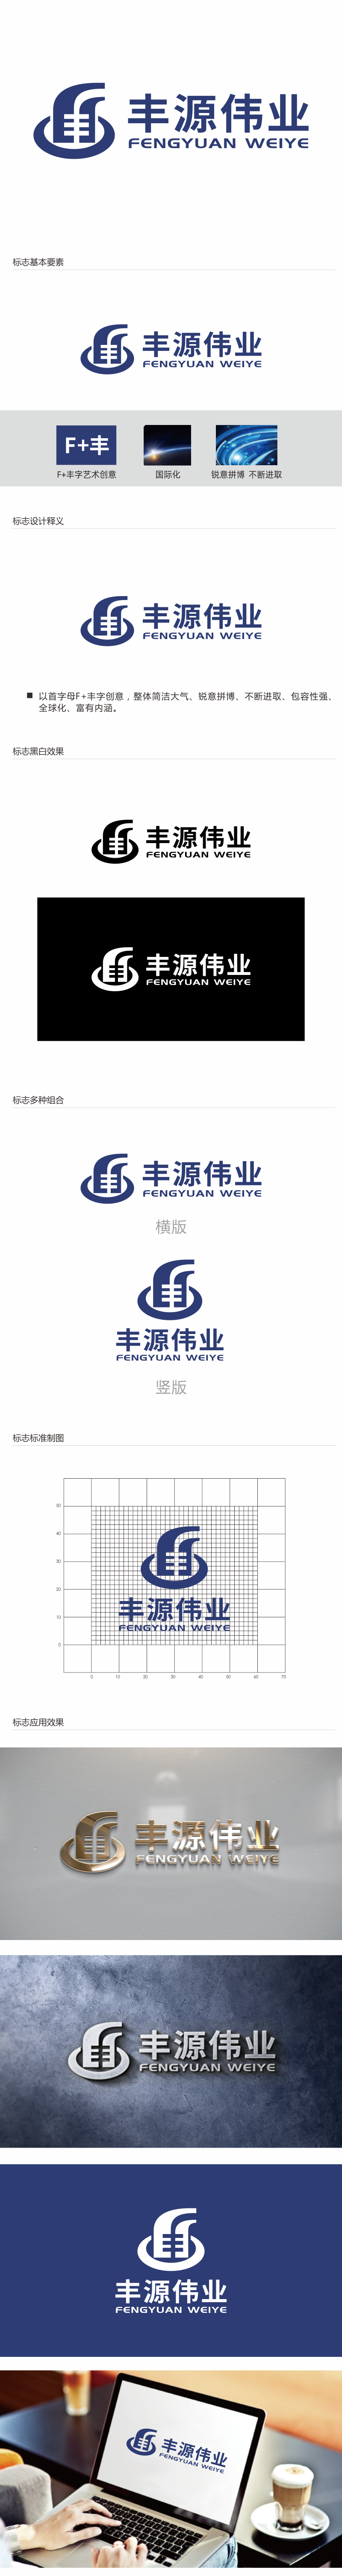 林思源的北京丰源伟业建筑装饰工程有限公司logo设计